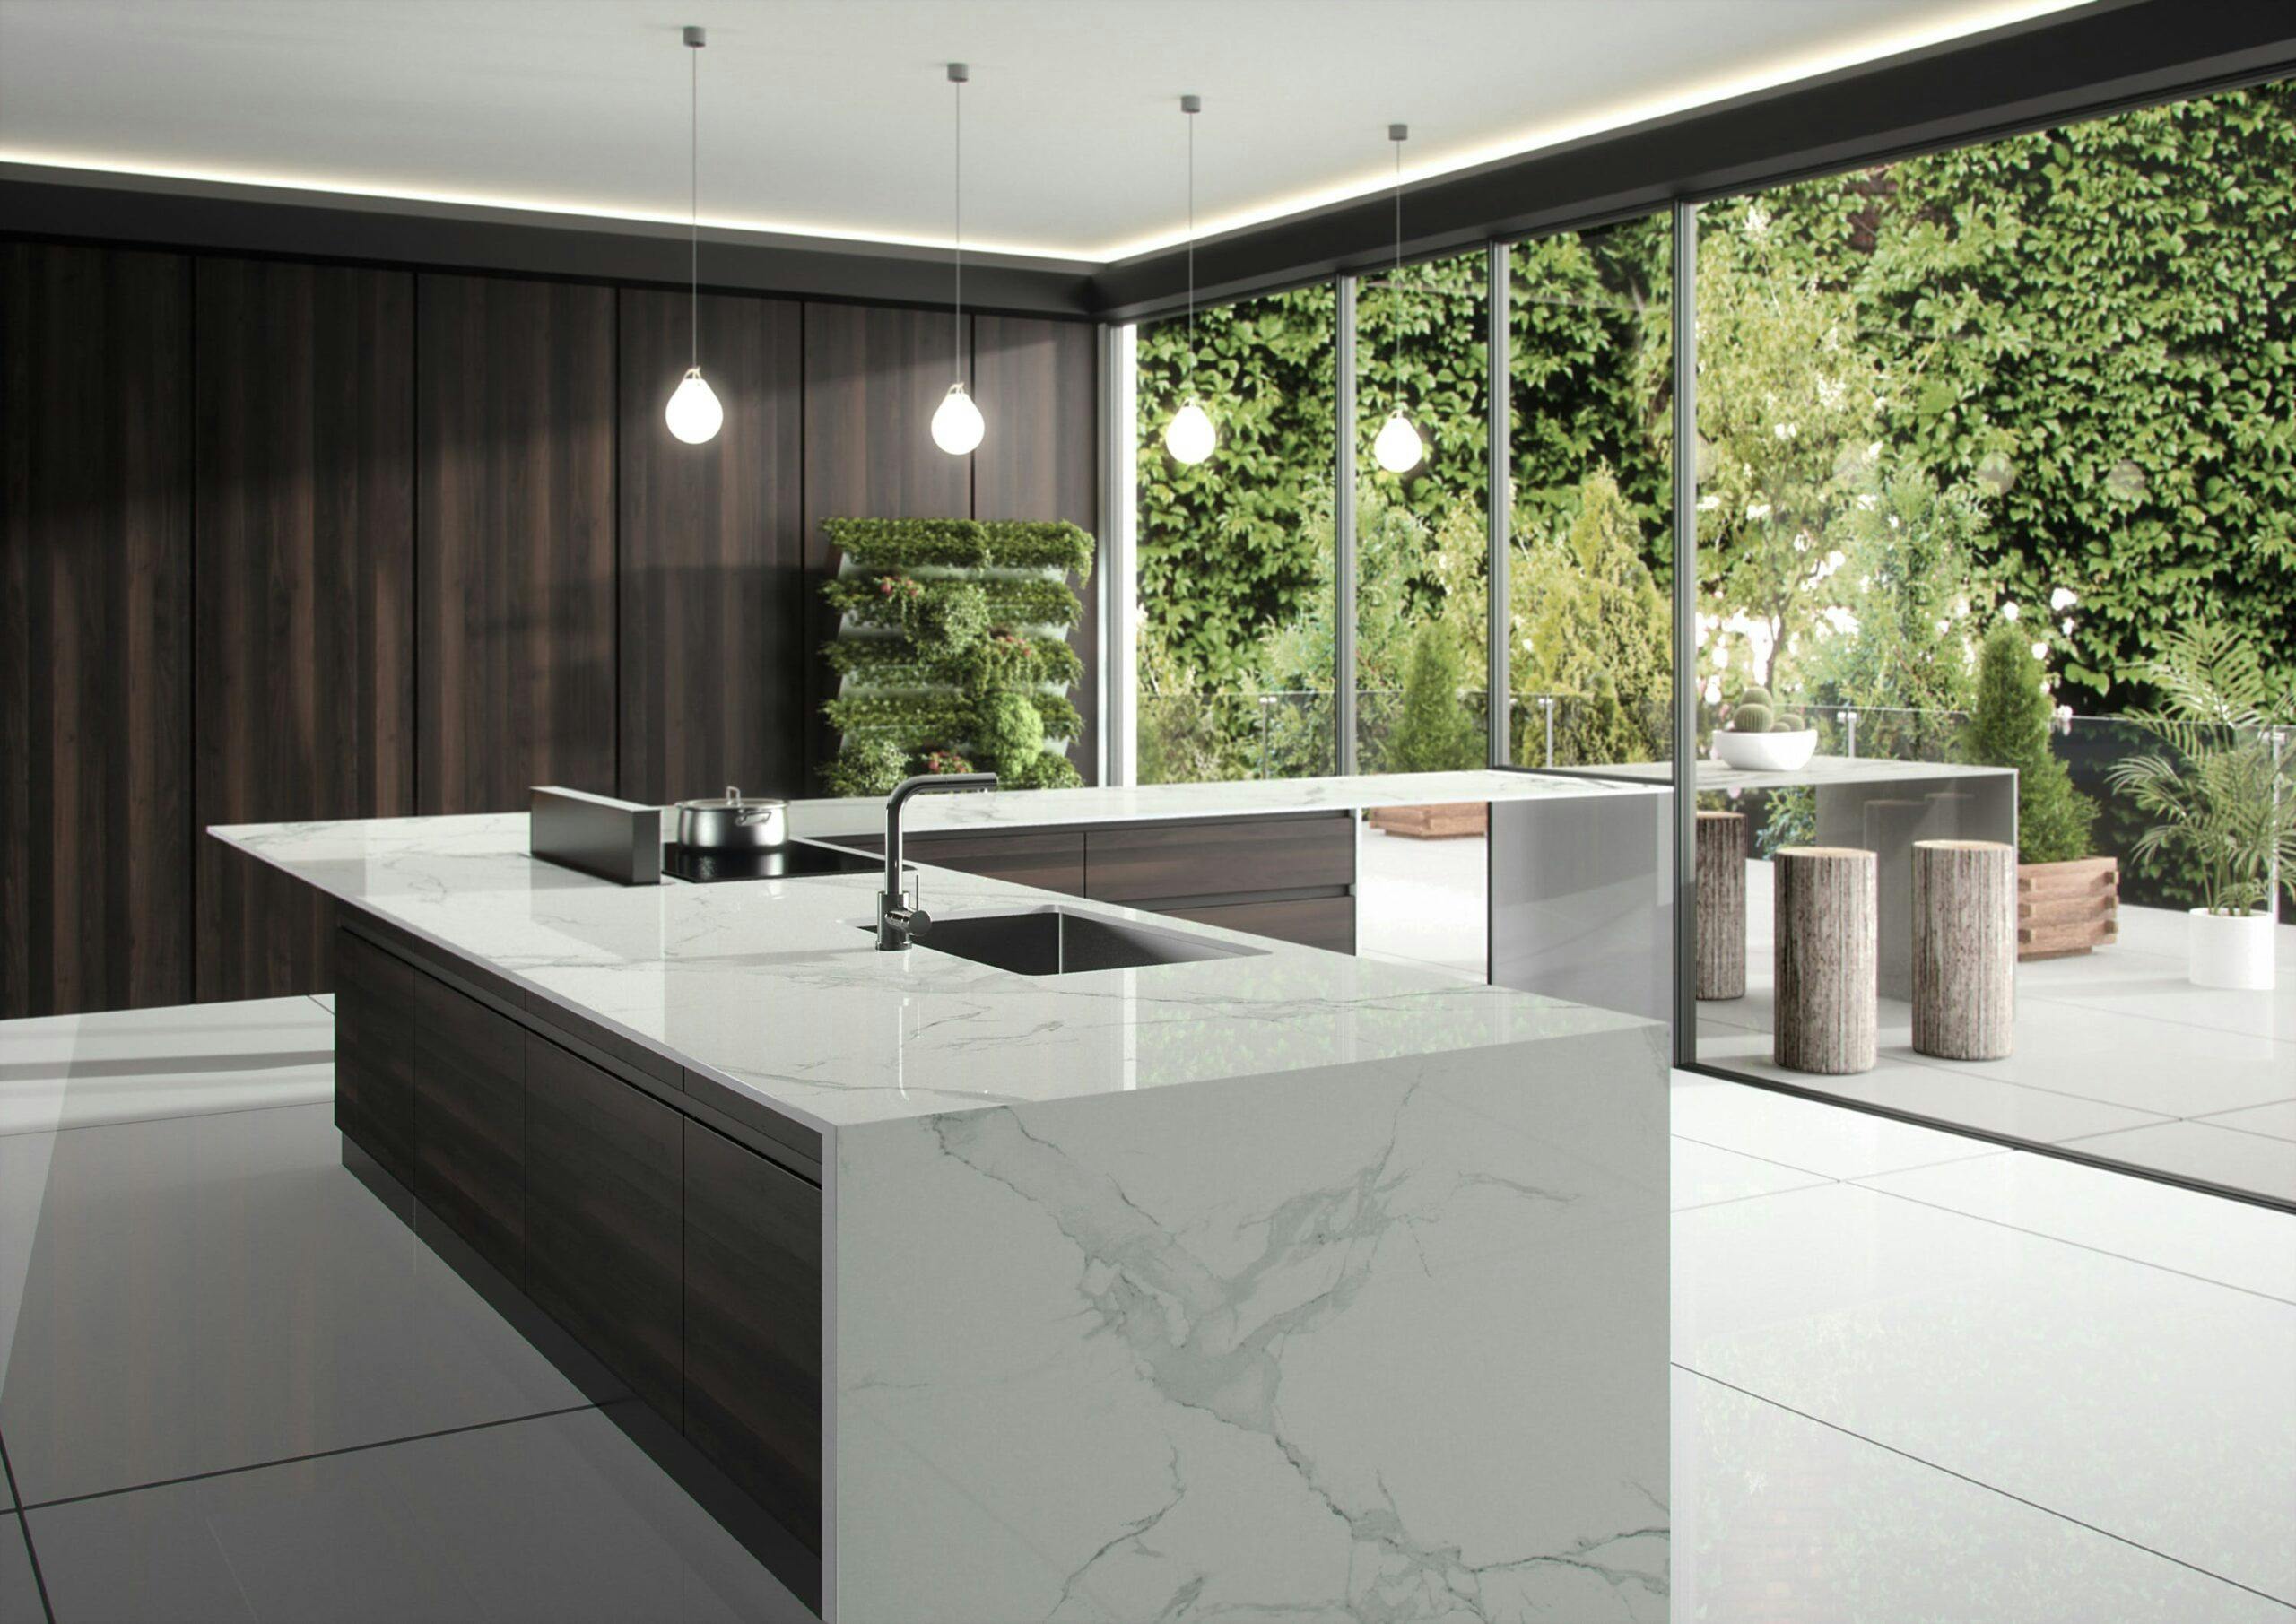 Image 35 of Dekton Natura kitchen countertop LR 5 scaled in Dekton® by Cosentino Introduces Opera and Natura - Cosentino